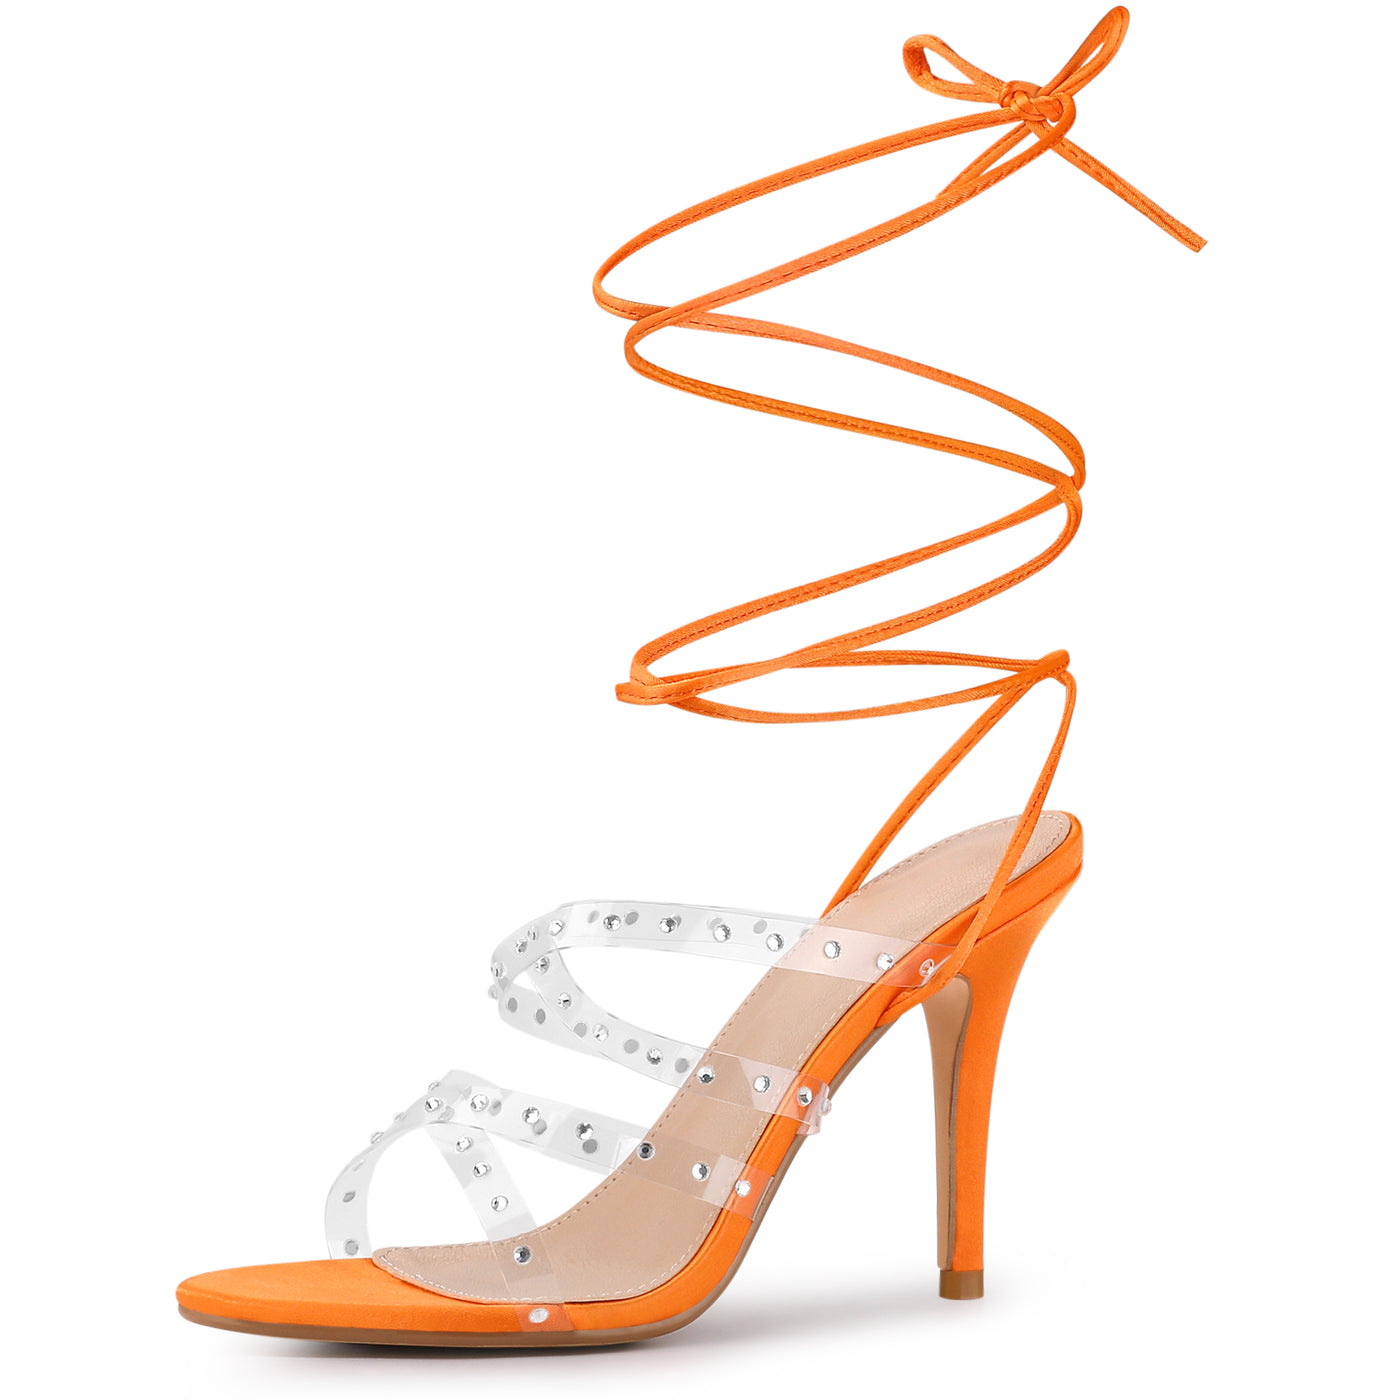 Allegra K Women's Satin Rhinestone Clear Strap Strappy Lace Up Stiletto Heel Sandals